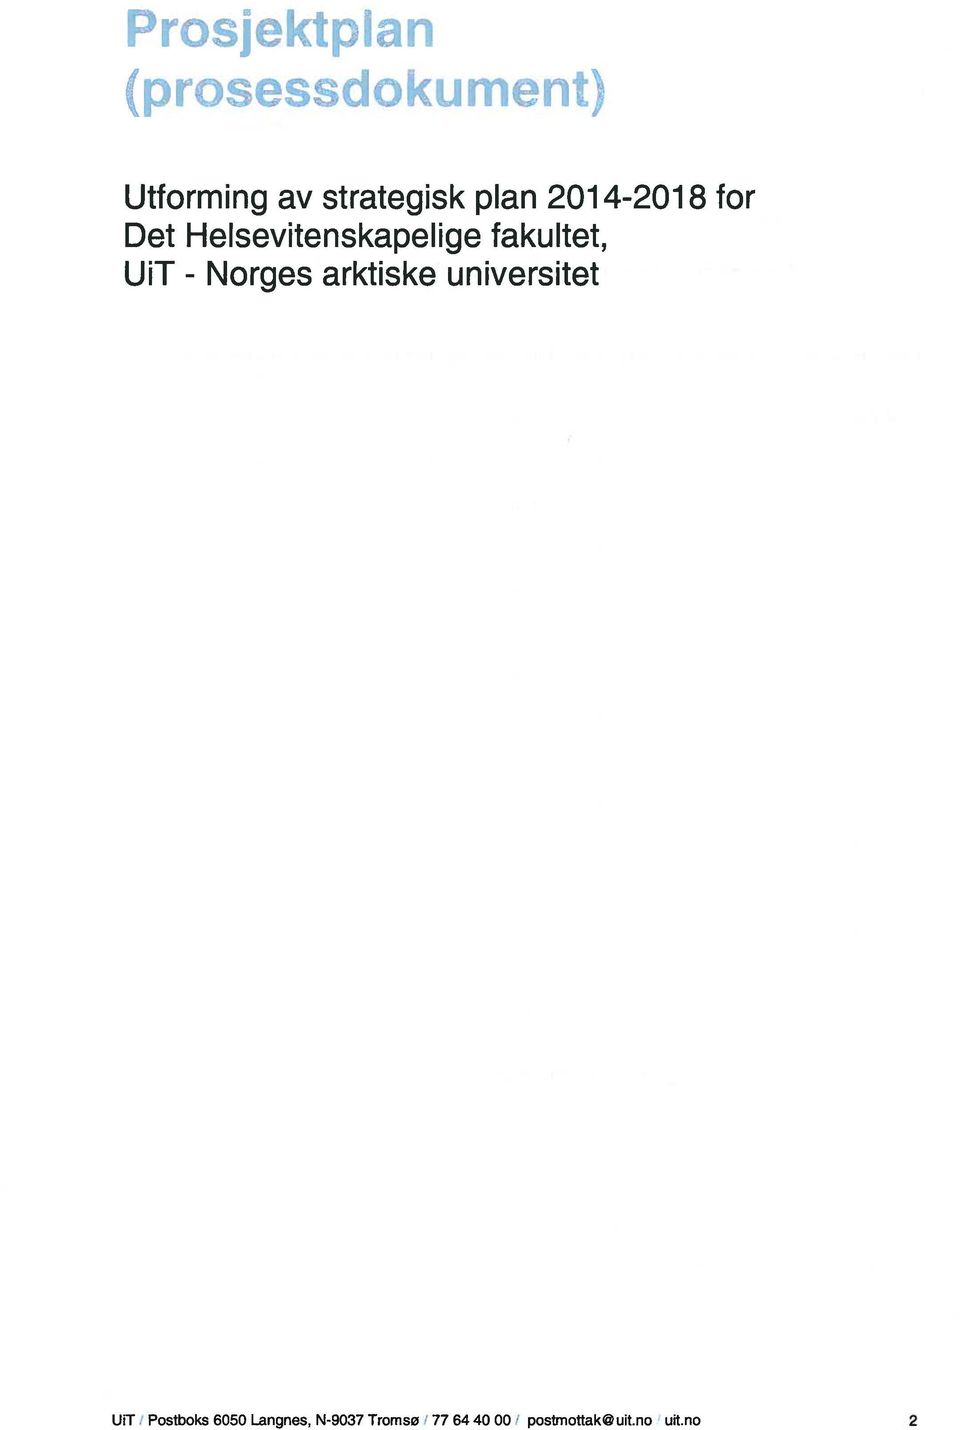 UiT Norges arktiske universitet - UIT I Postboks 6050